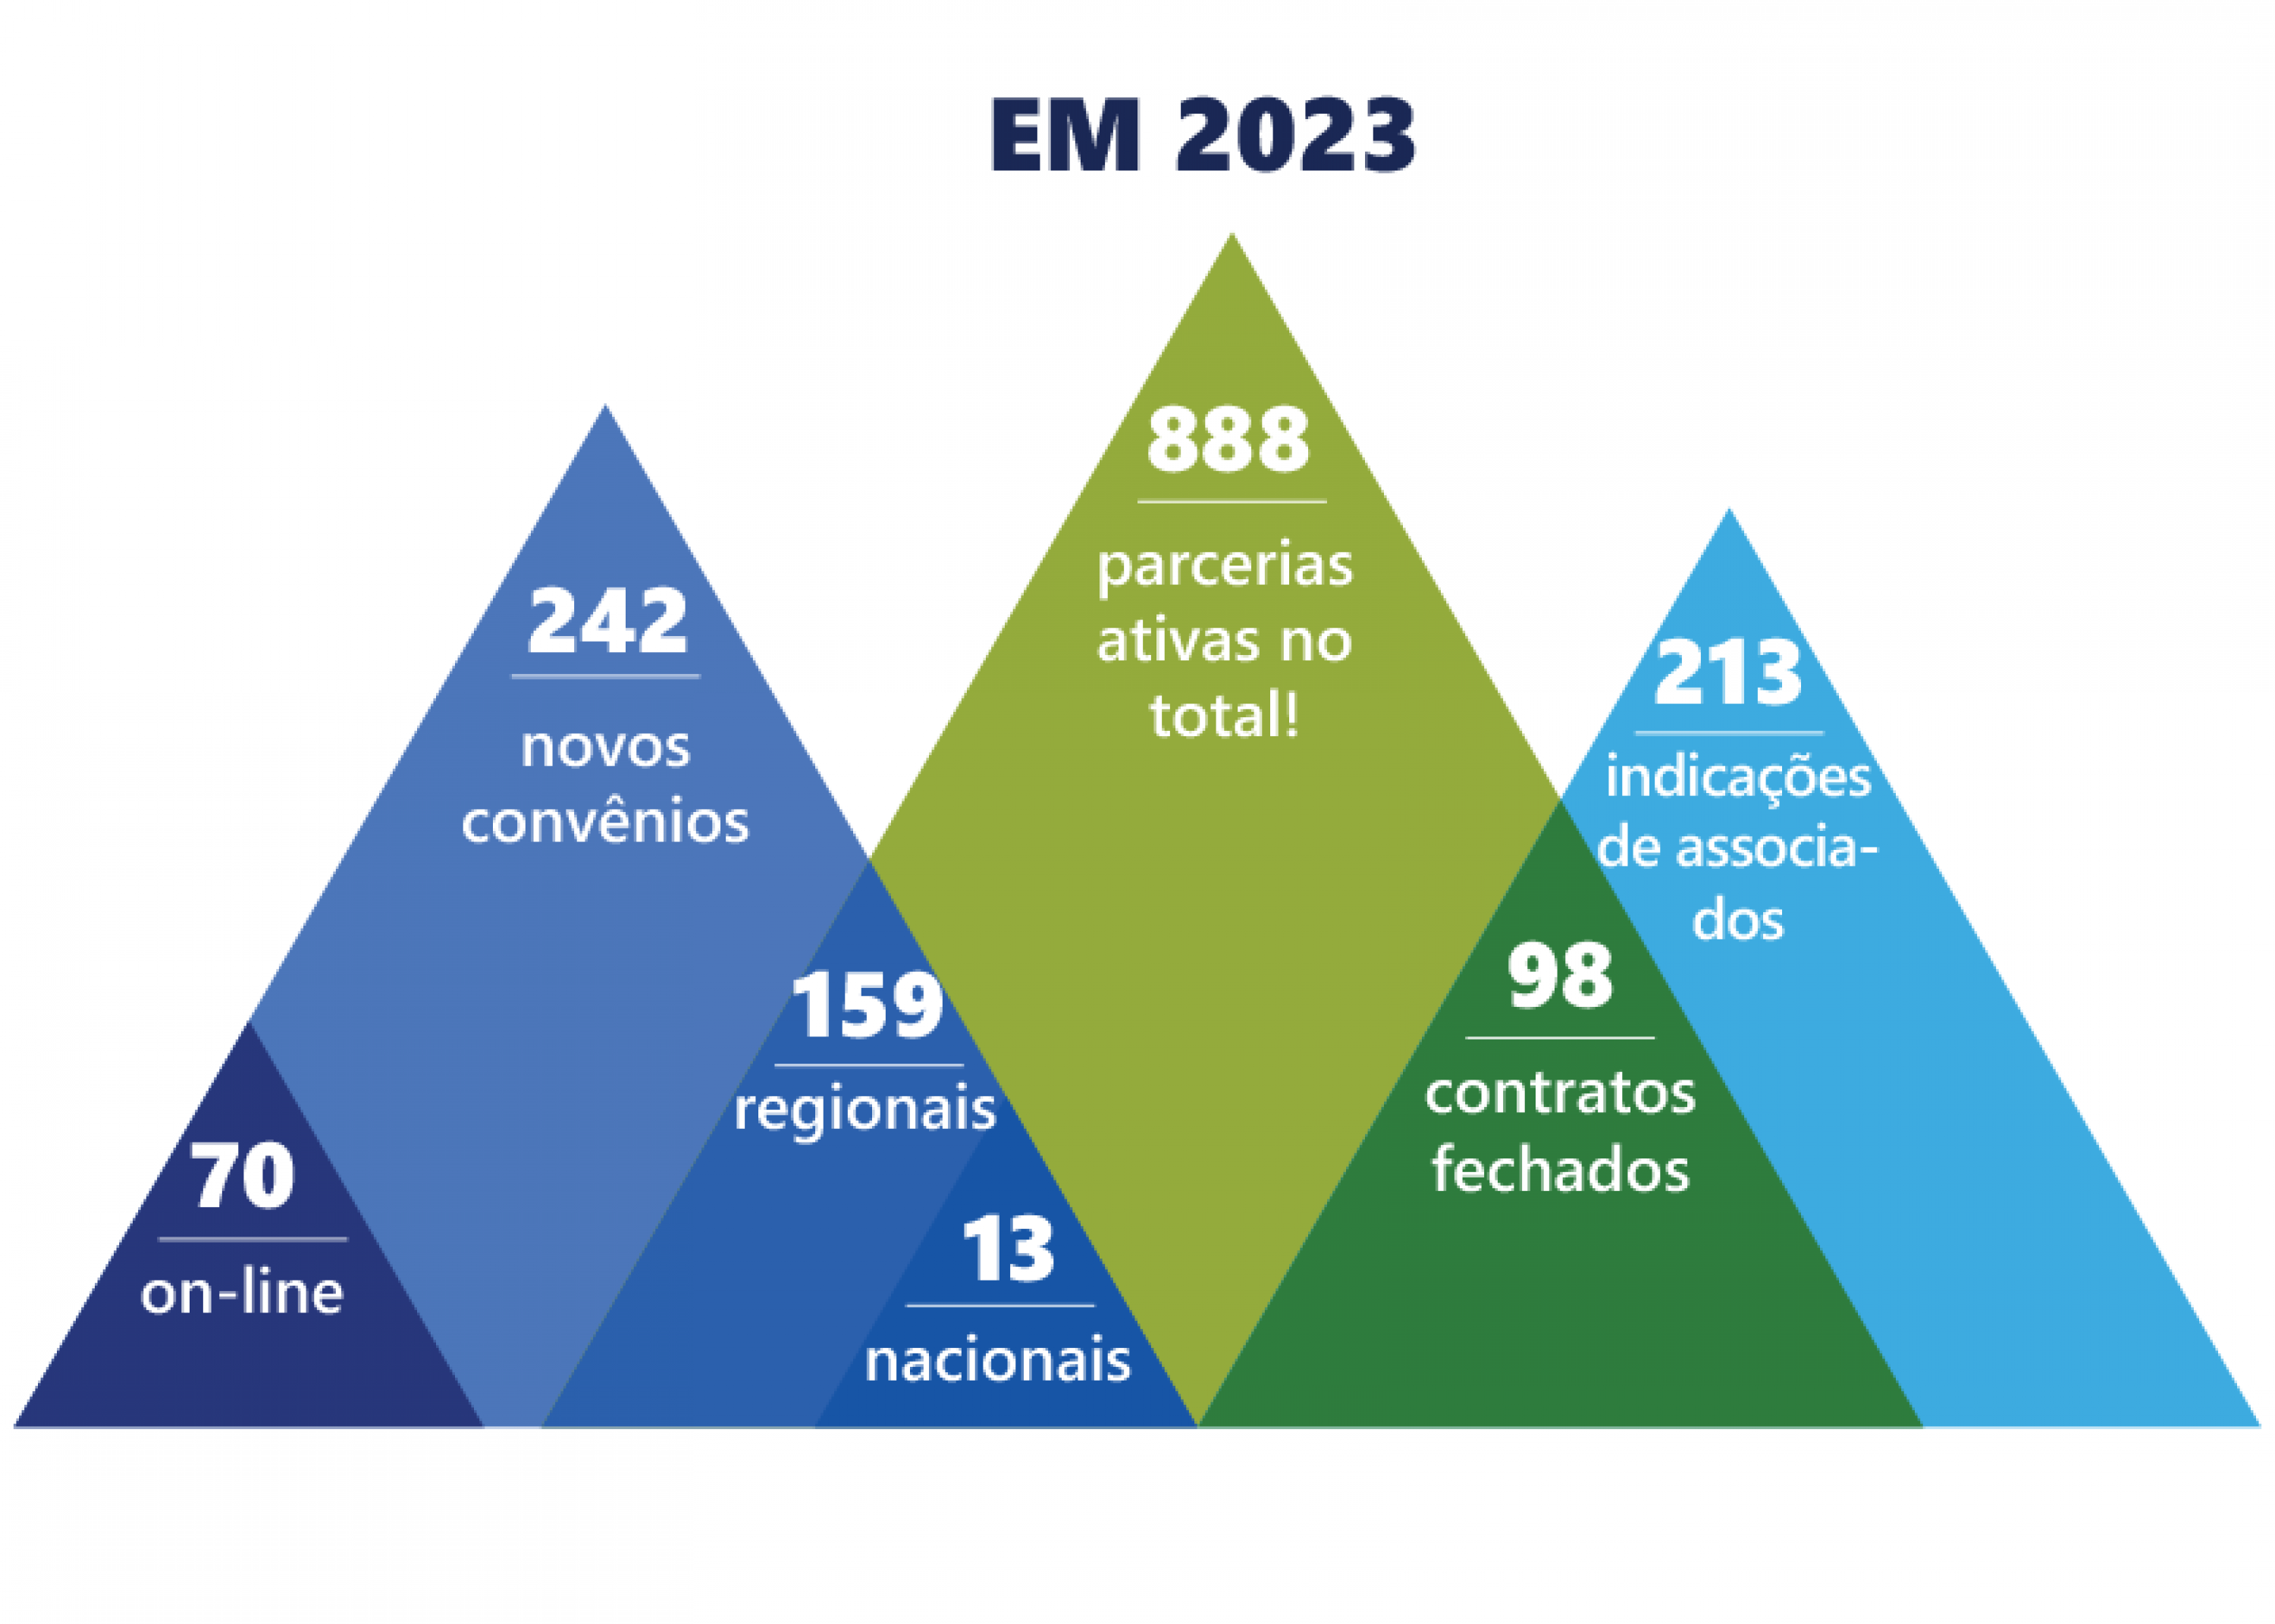 O infográfico mostra o crescimento da rede conveniada em 2023 e destaca o total de parcerias fechadas com a indicação de associados.